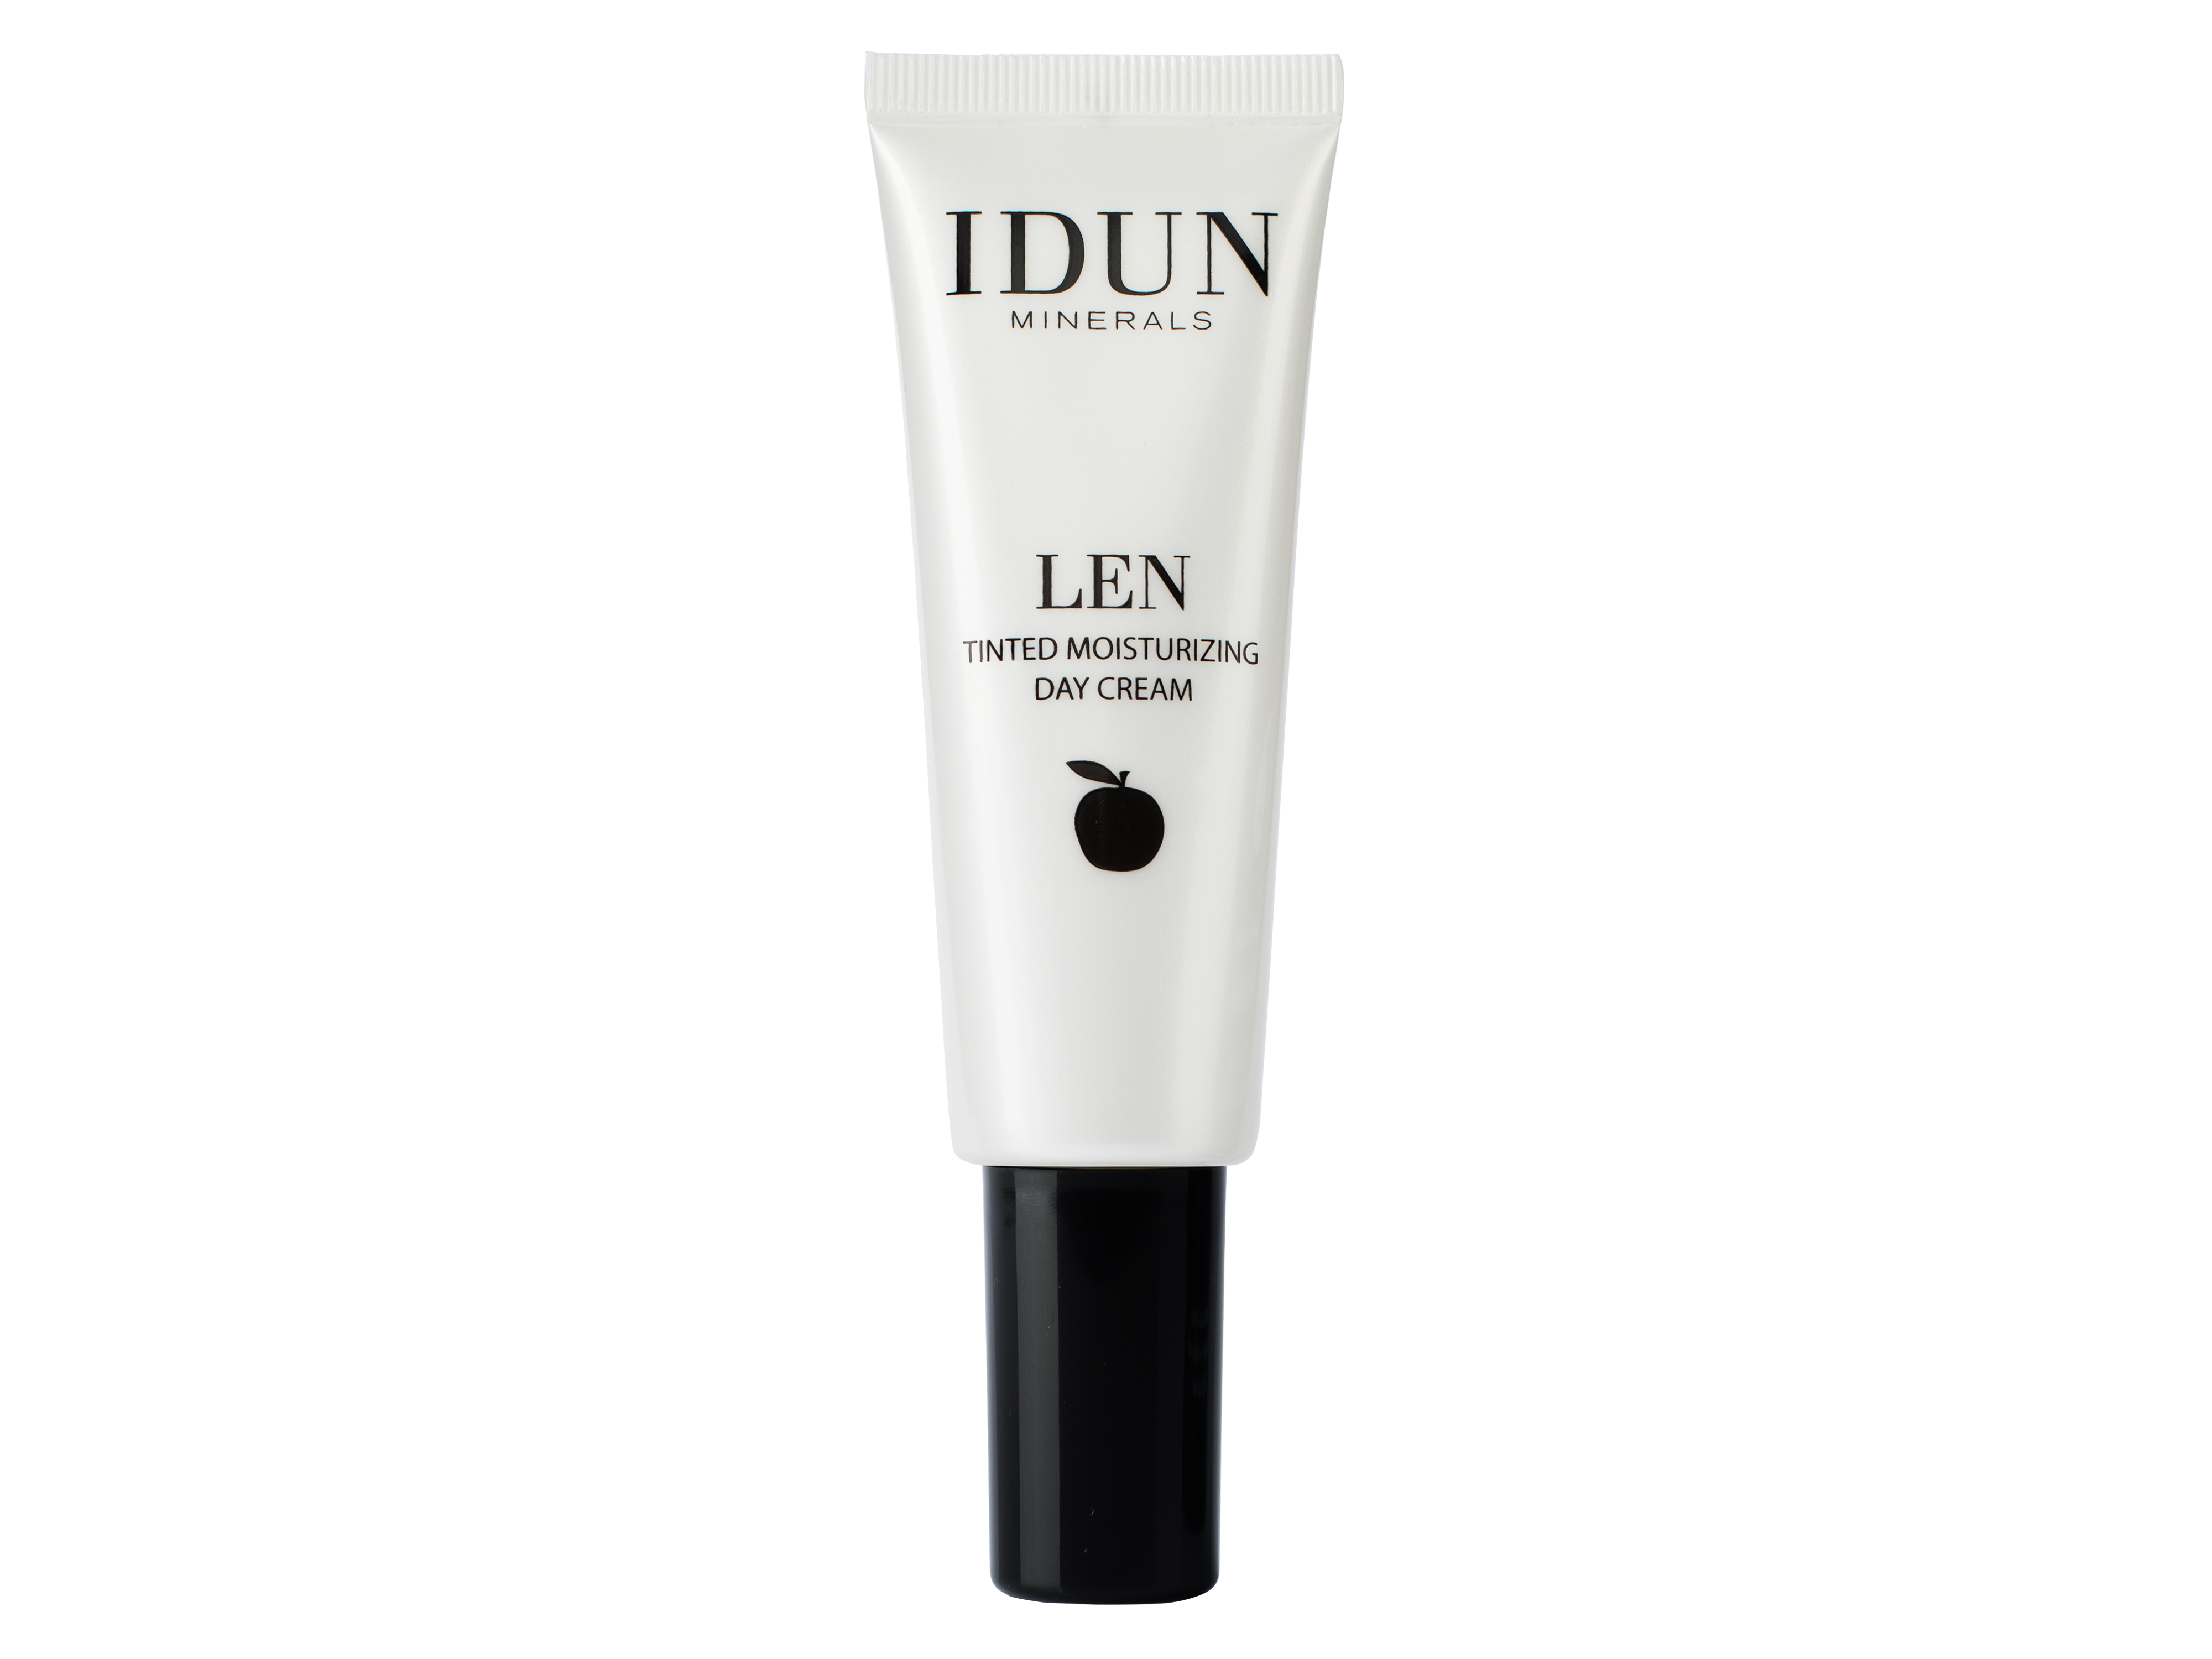 IDUN Minerals IDUNMinerals LEN Tinted Day Cream Light/medium, 50 ml